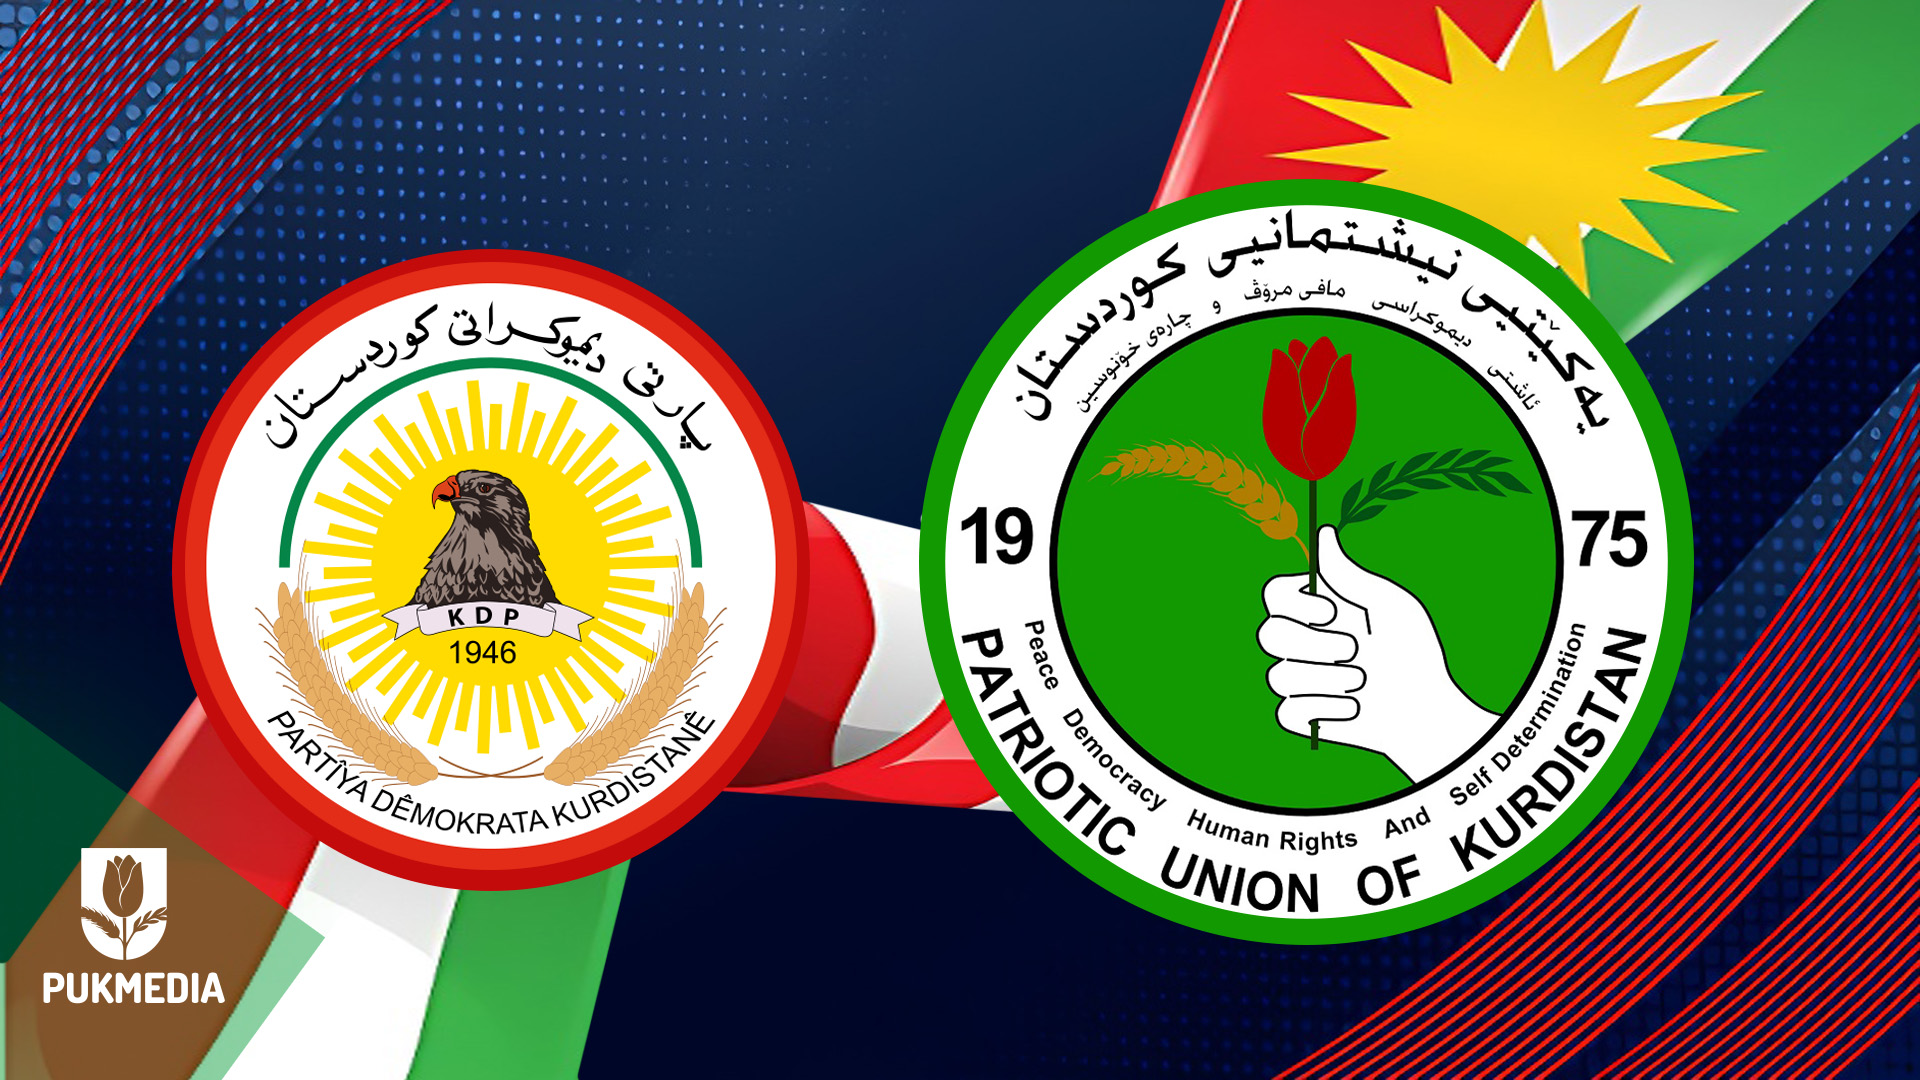 الاتحاد الوطني يؤيد مقترح اليونامي ويريد انتخابات نزيهة في اقليم كوردستان 